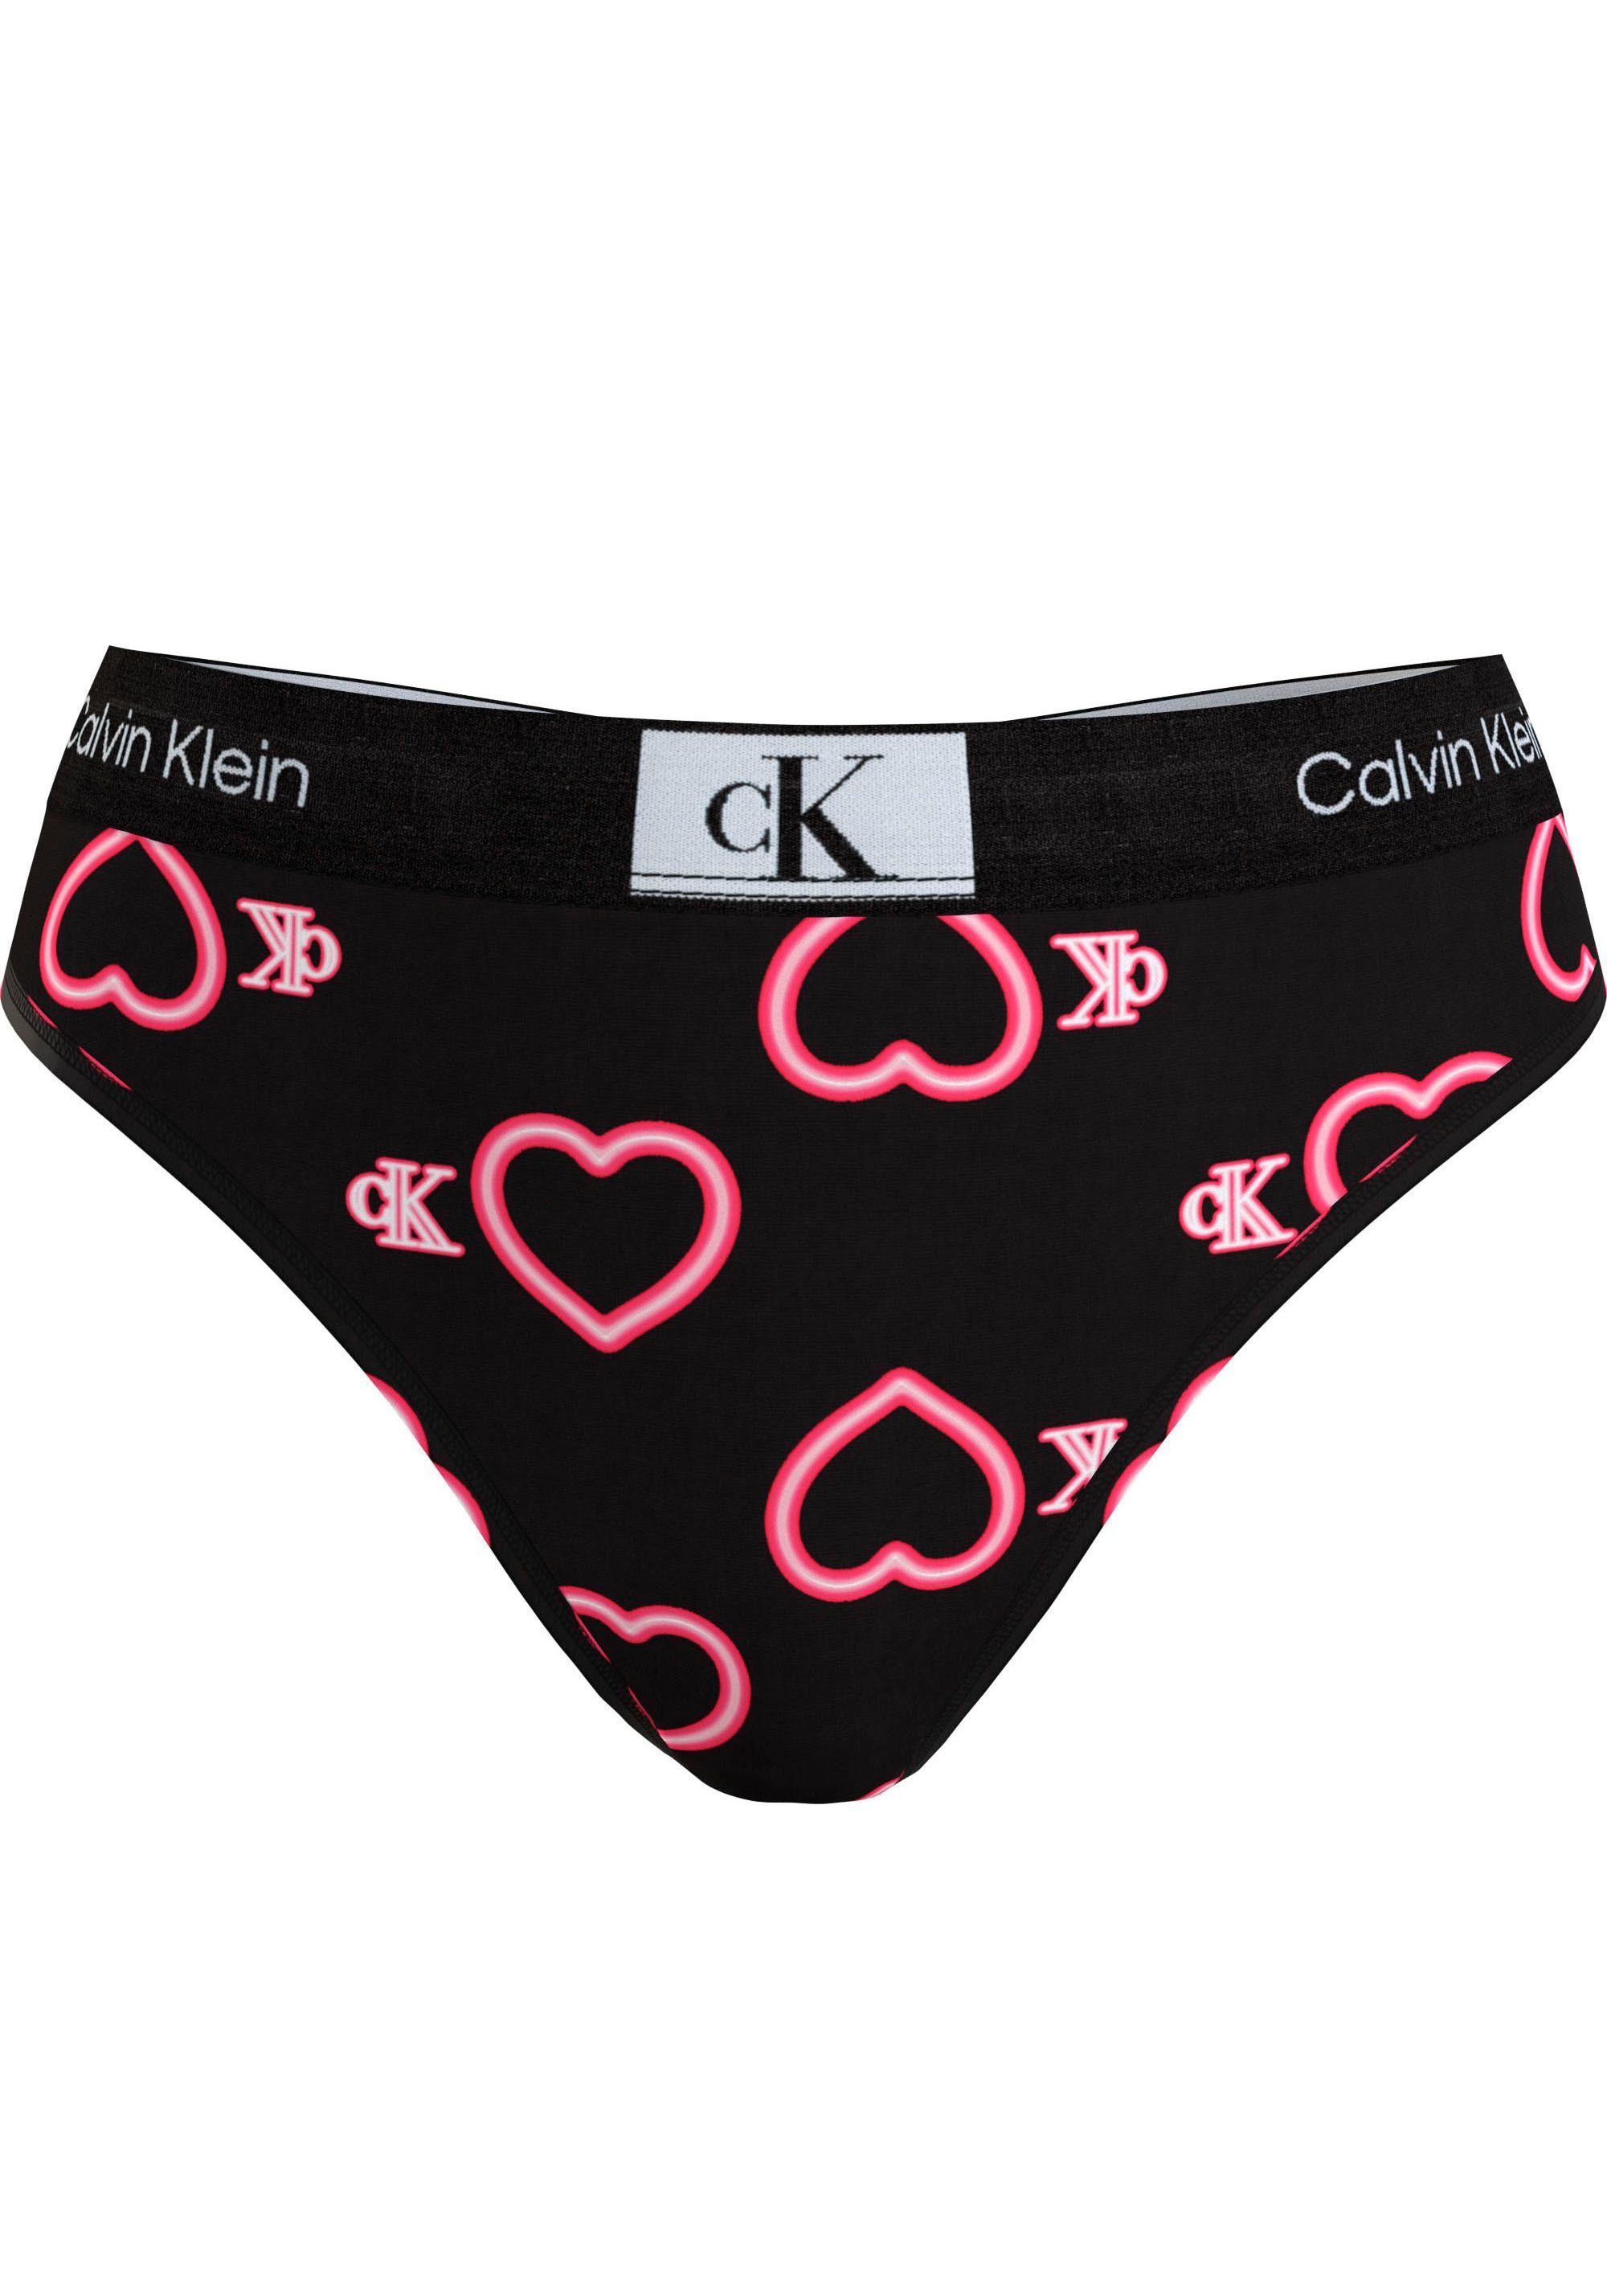 Calvin Klein Underwear T-String MODERN Calvin Klein THONG von Underwear Elastikbund, mit sportlichem Thong